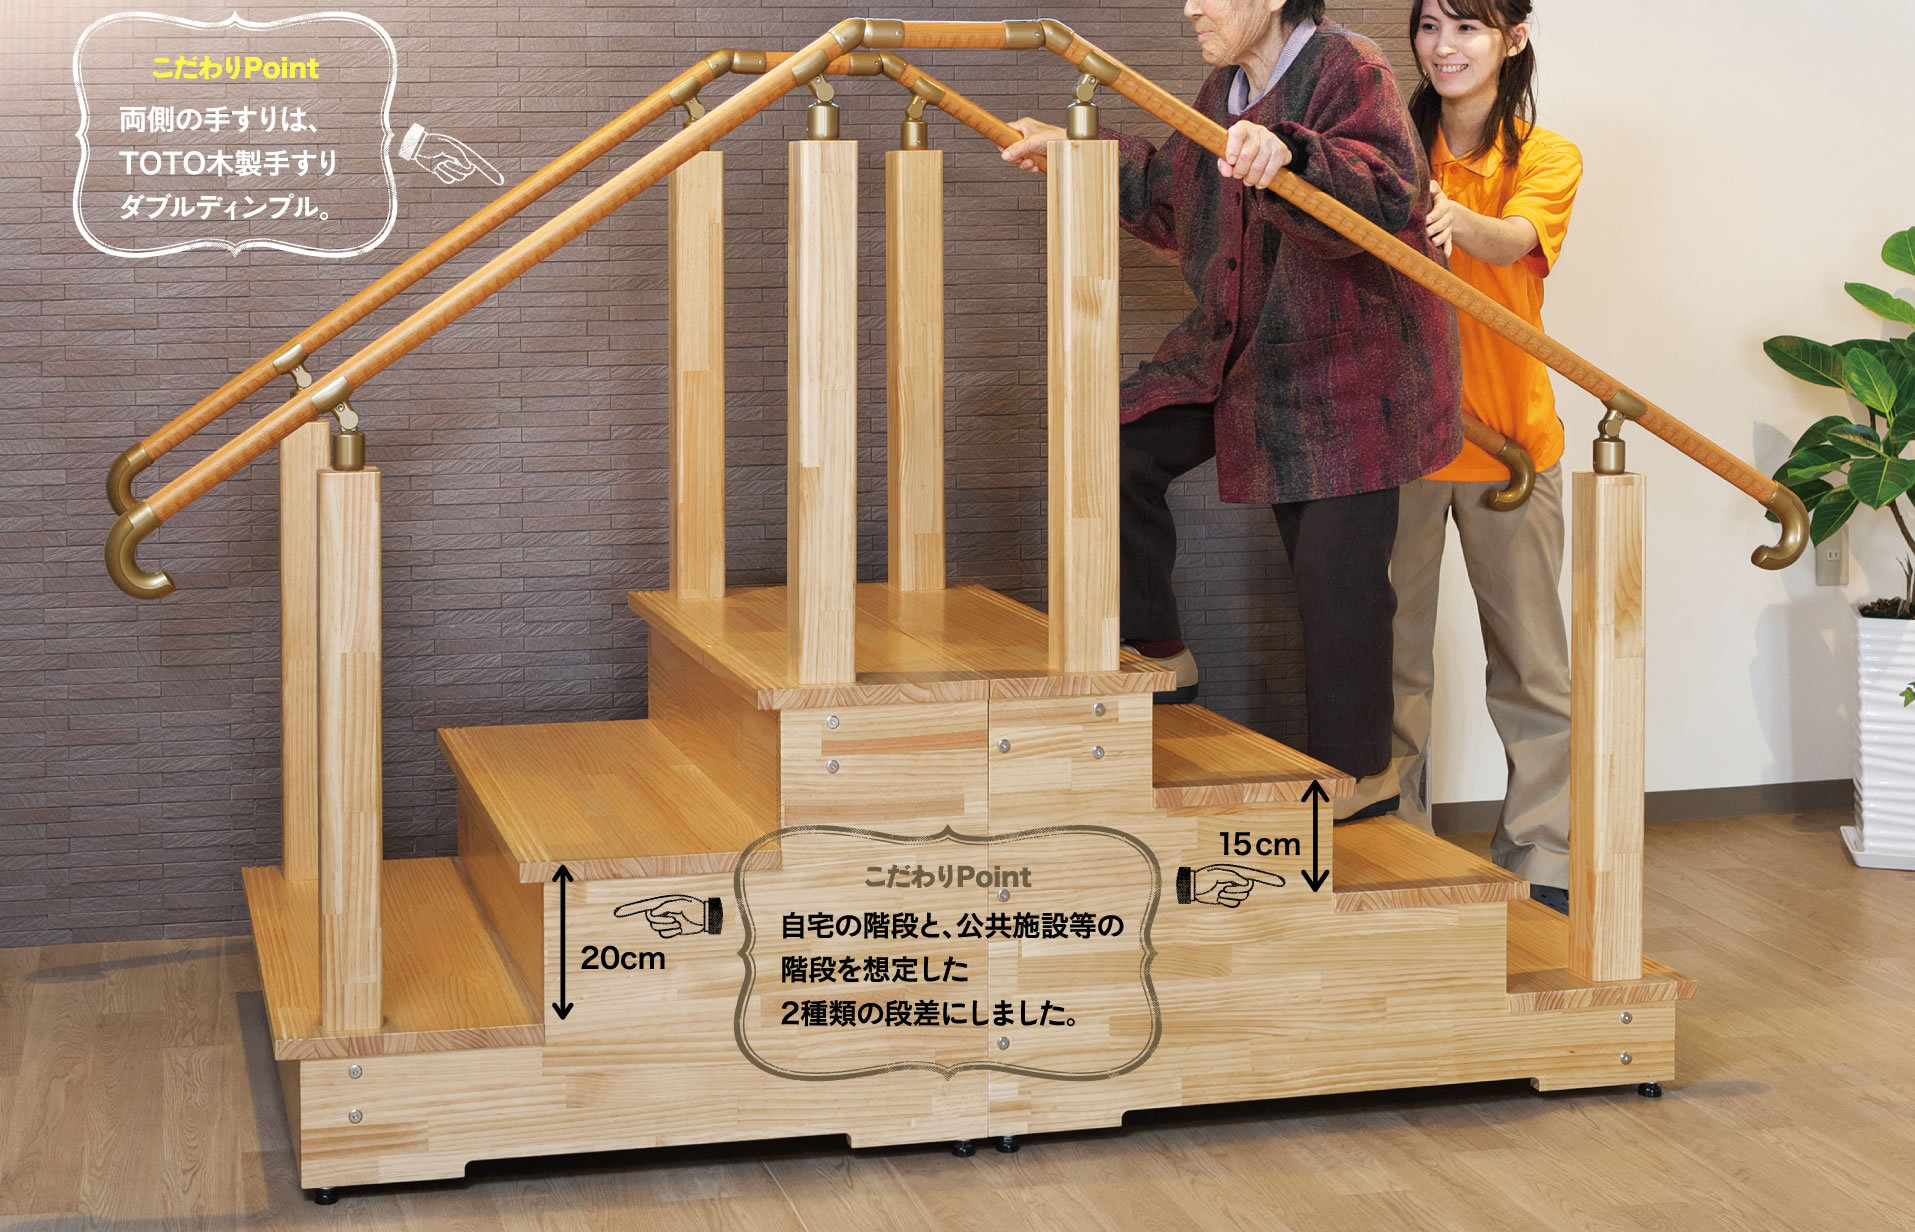 こだわりPoint：両側の手すりは、TOTO木製手すりダブルディンプル。／こだわりPoint：自宅の階段と、公共施設等の階段を想定した2種類の段差にしました。